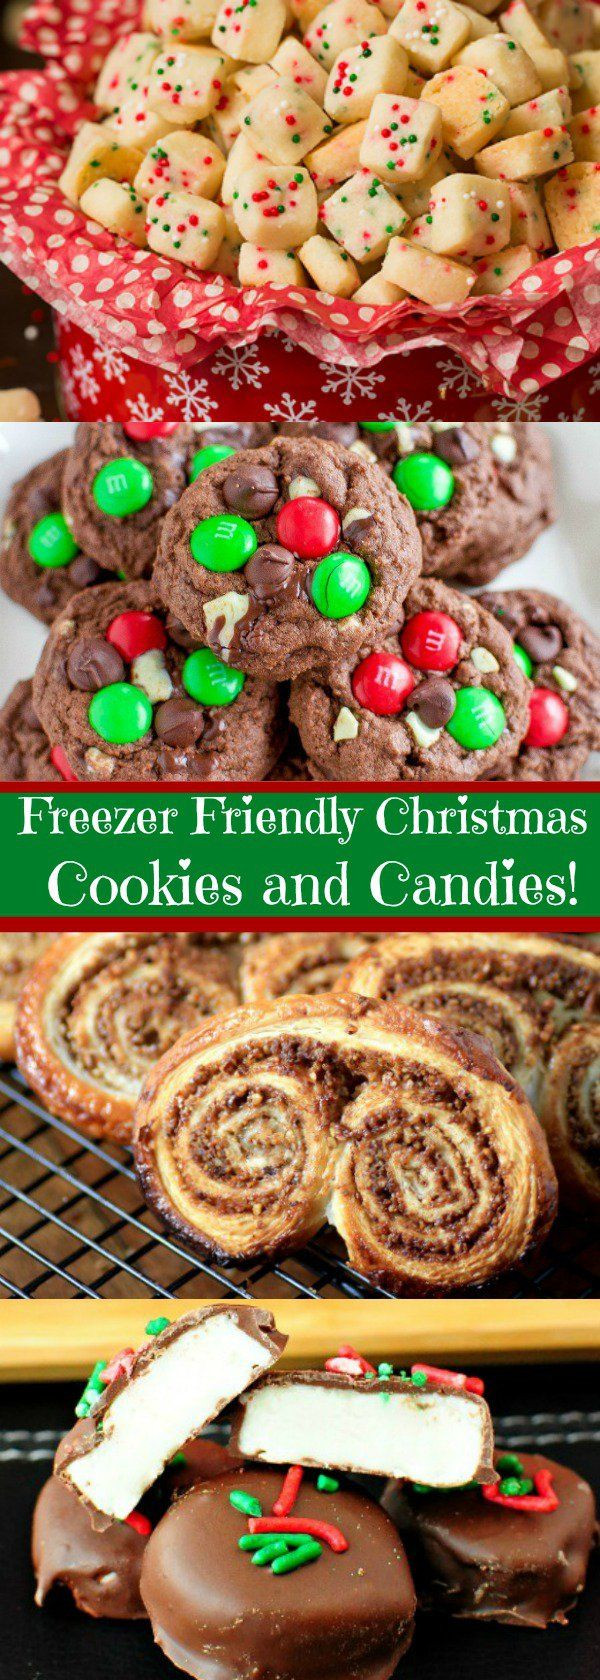 Make Ahead Christmas Cookies
 Best 25 Make ahead desserts ideas on Pinterest